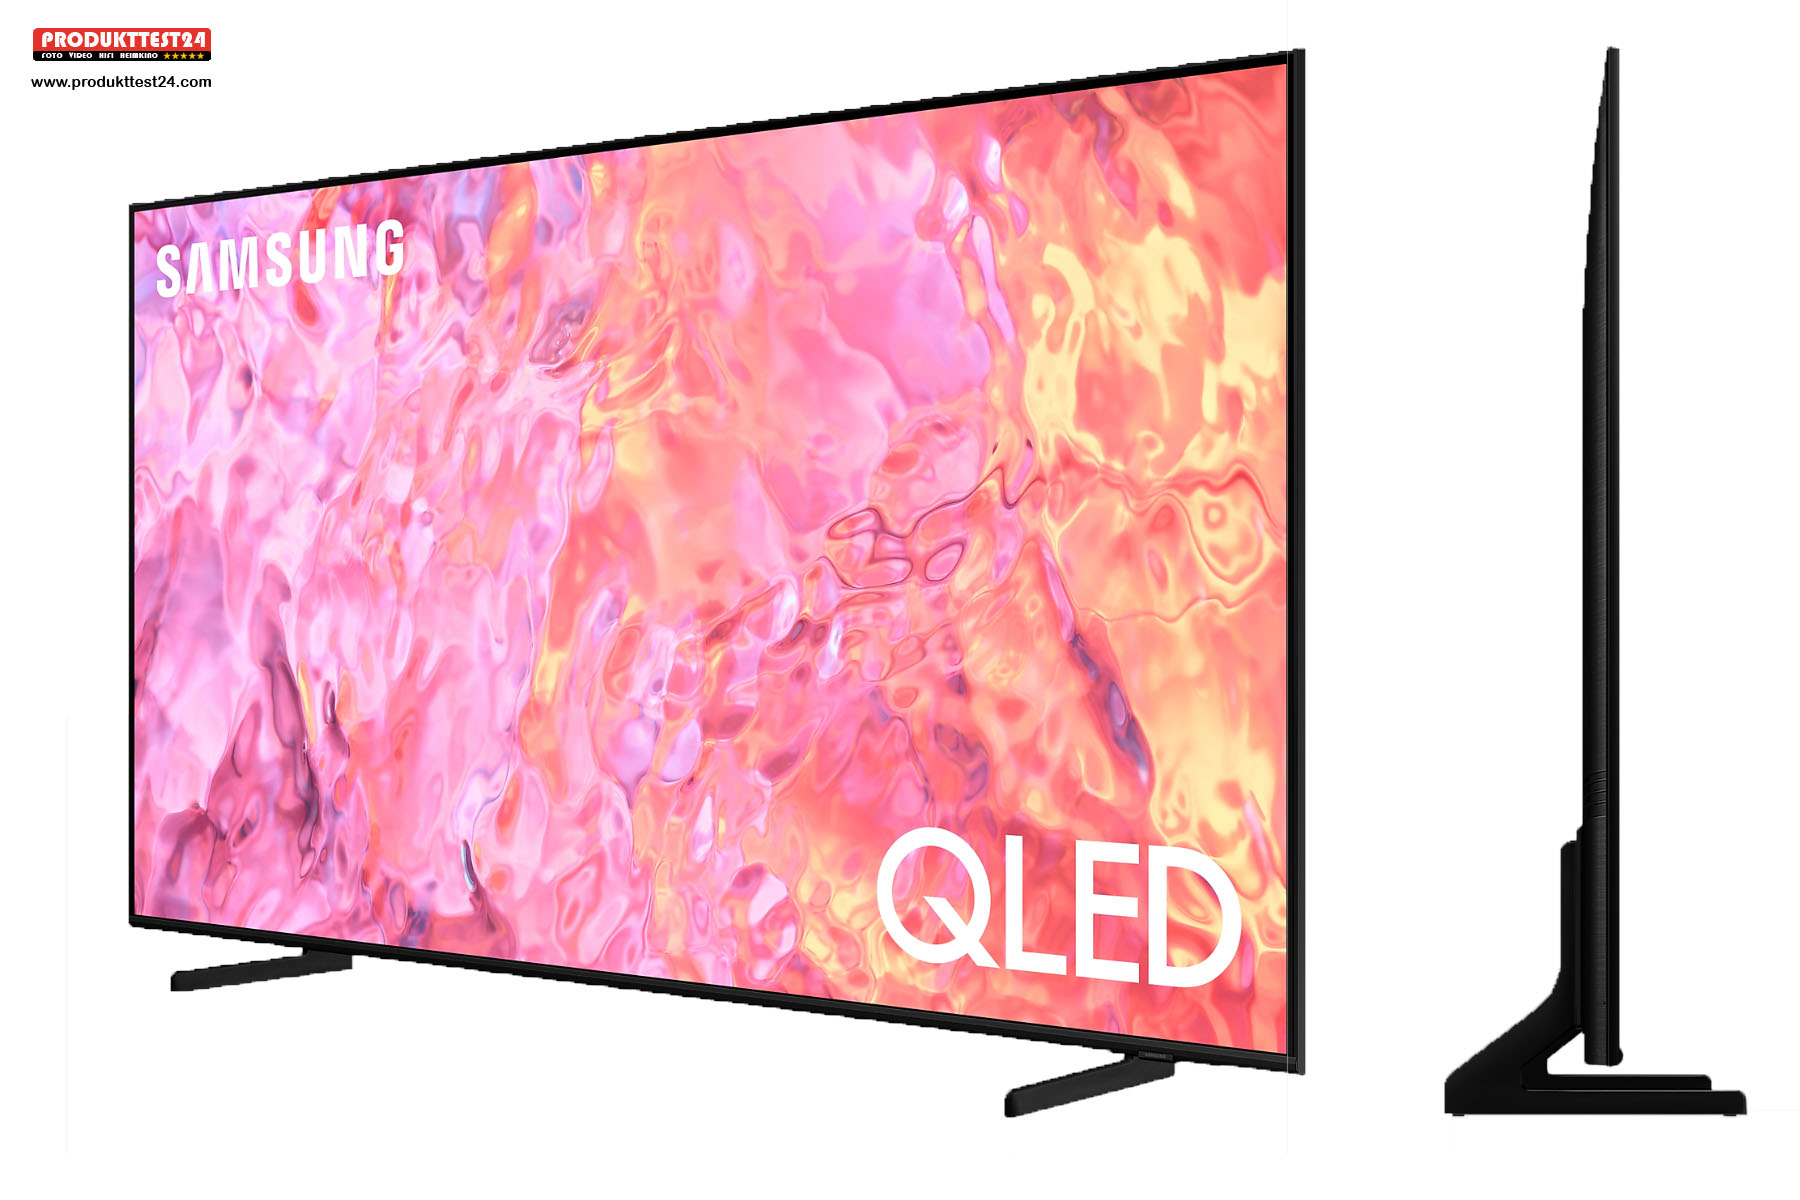 Der Samsung GQ43Q60C ist der günstigste QLED-Fernseher aus dem Hause Samsung